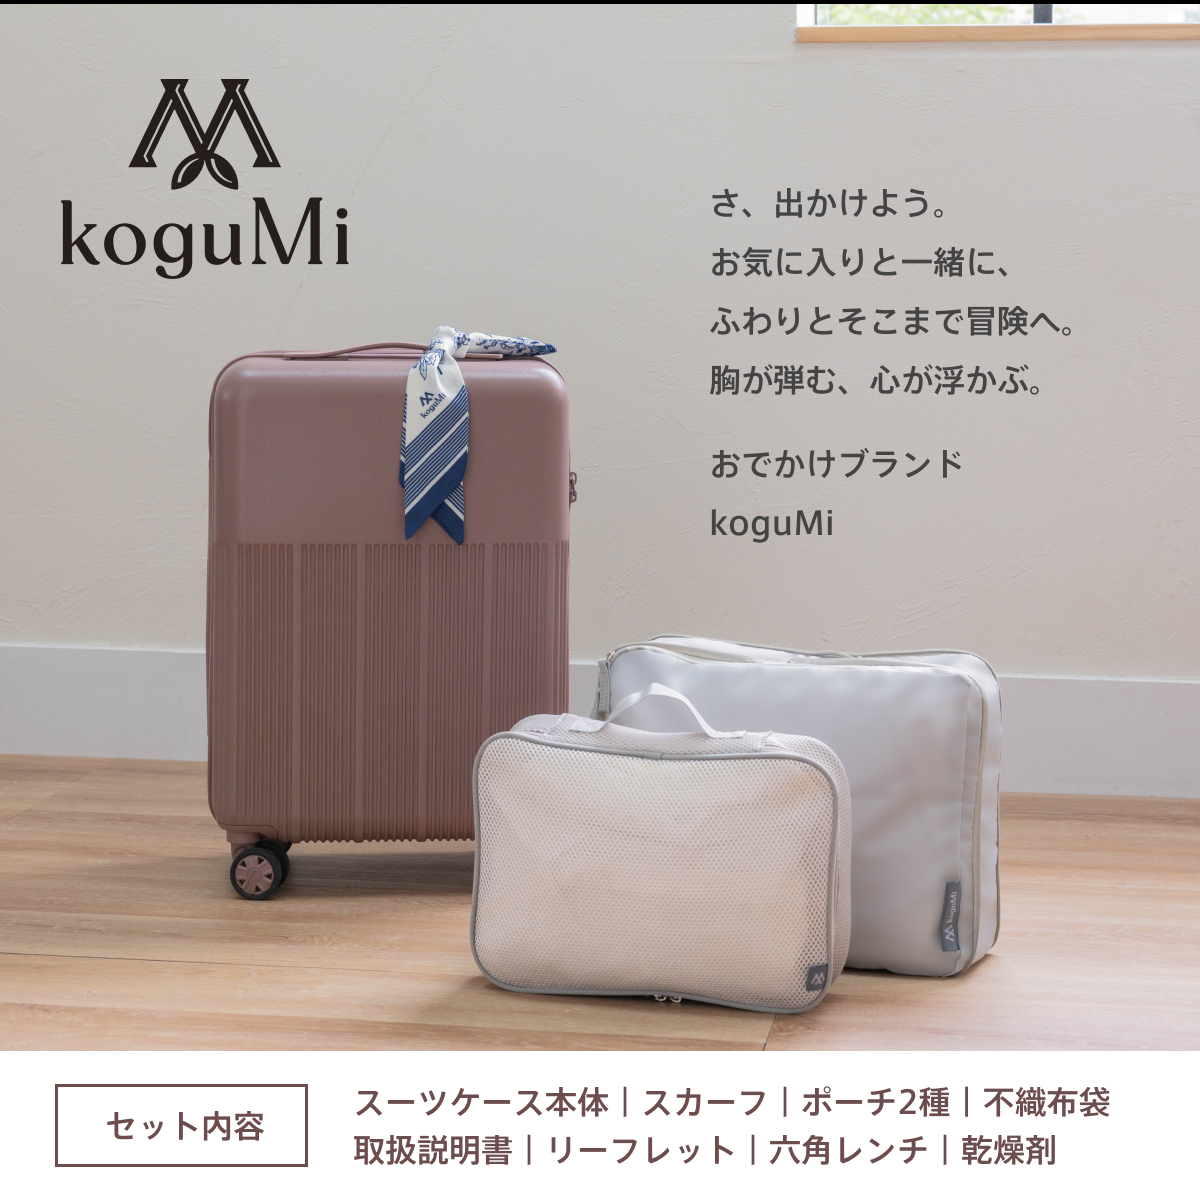 koguMi スーツケース UKU Sサイズ RPO素材 超軽量2.0kg 日本企業 